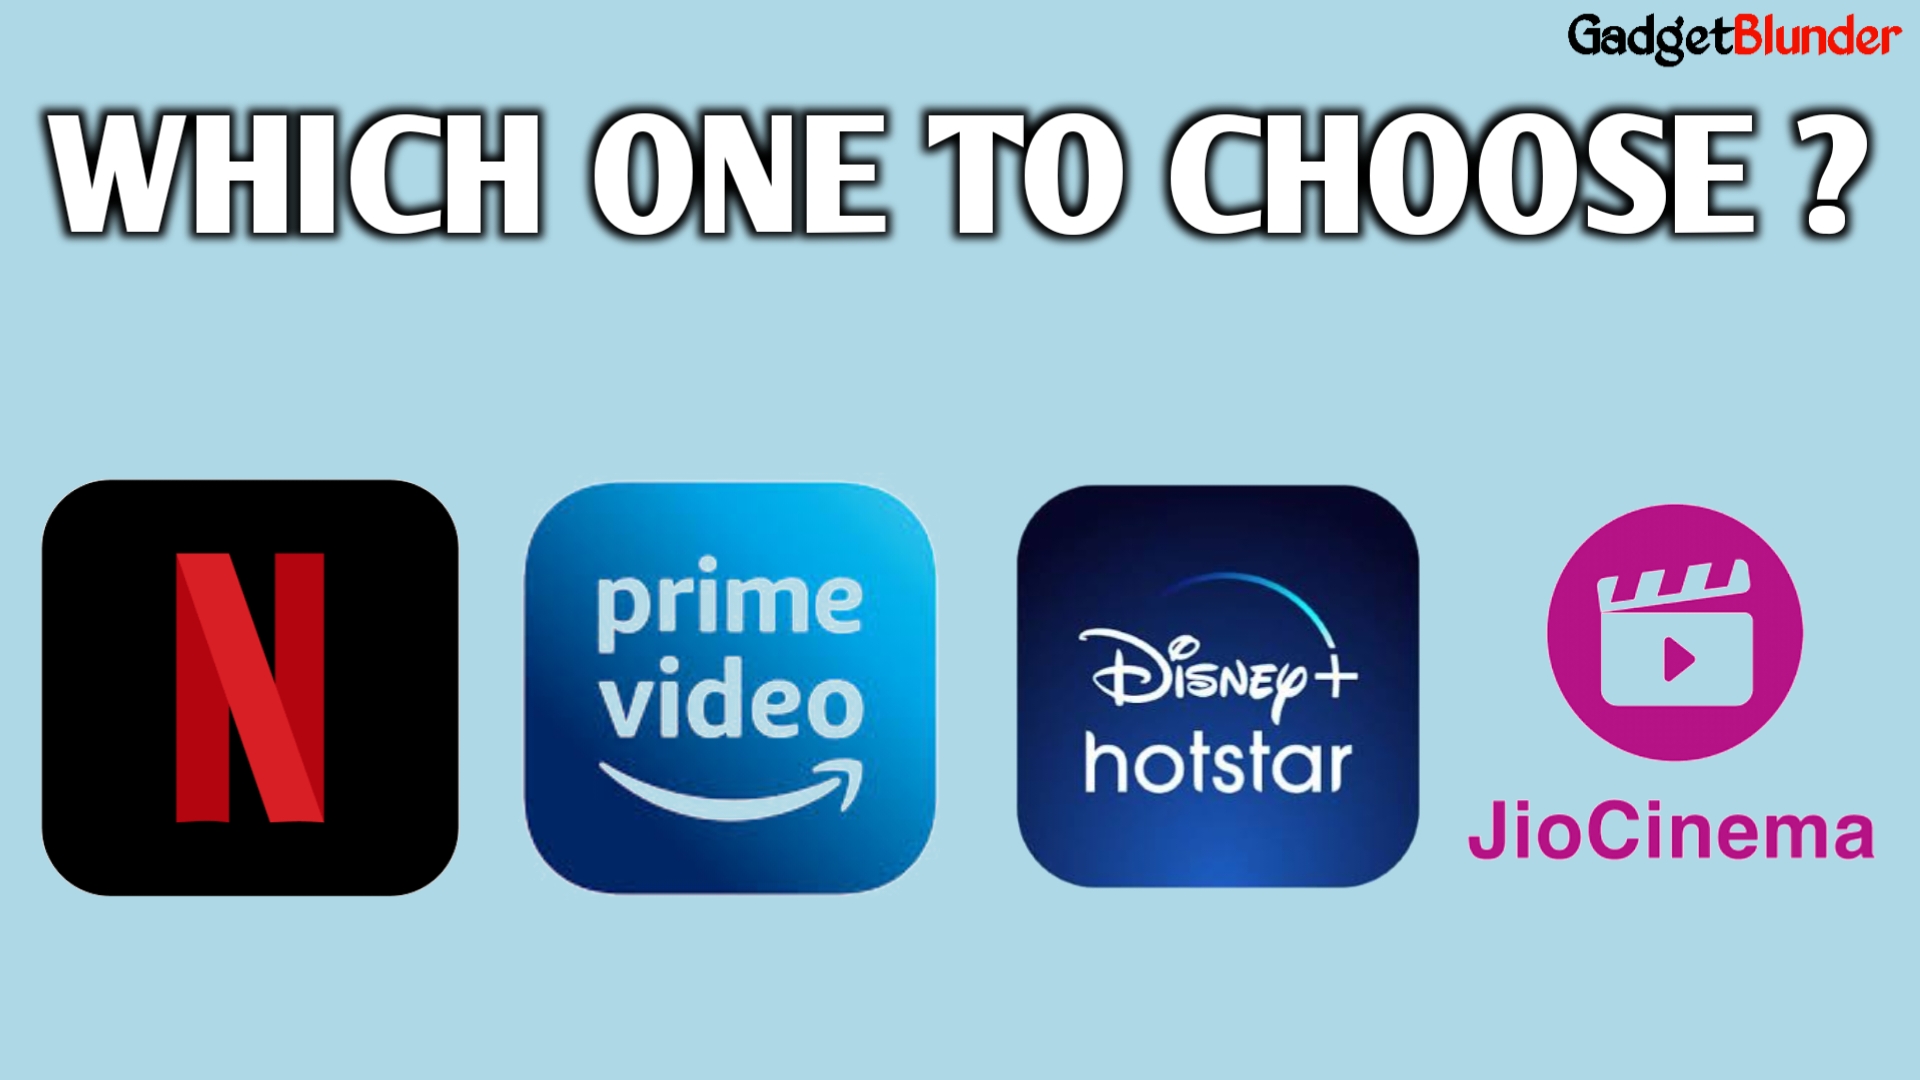 Netflix Vs Amazon Prime Video Vs Disney+ Hotstar Vs JioCinema